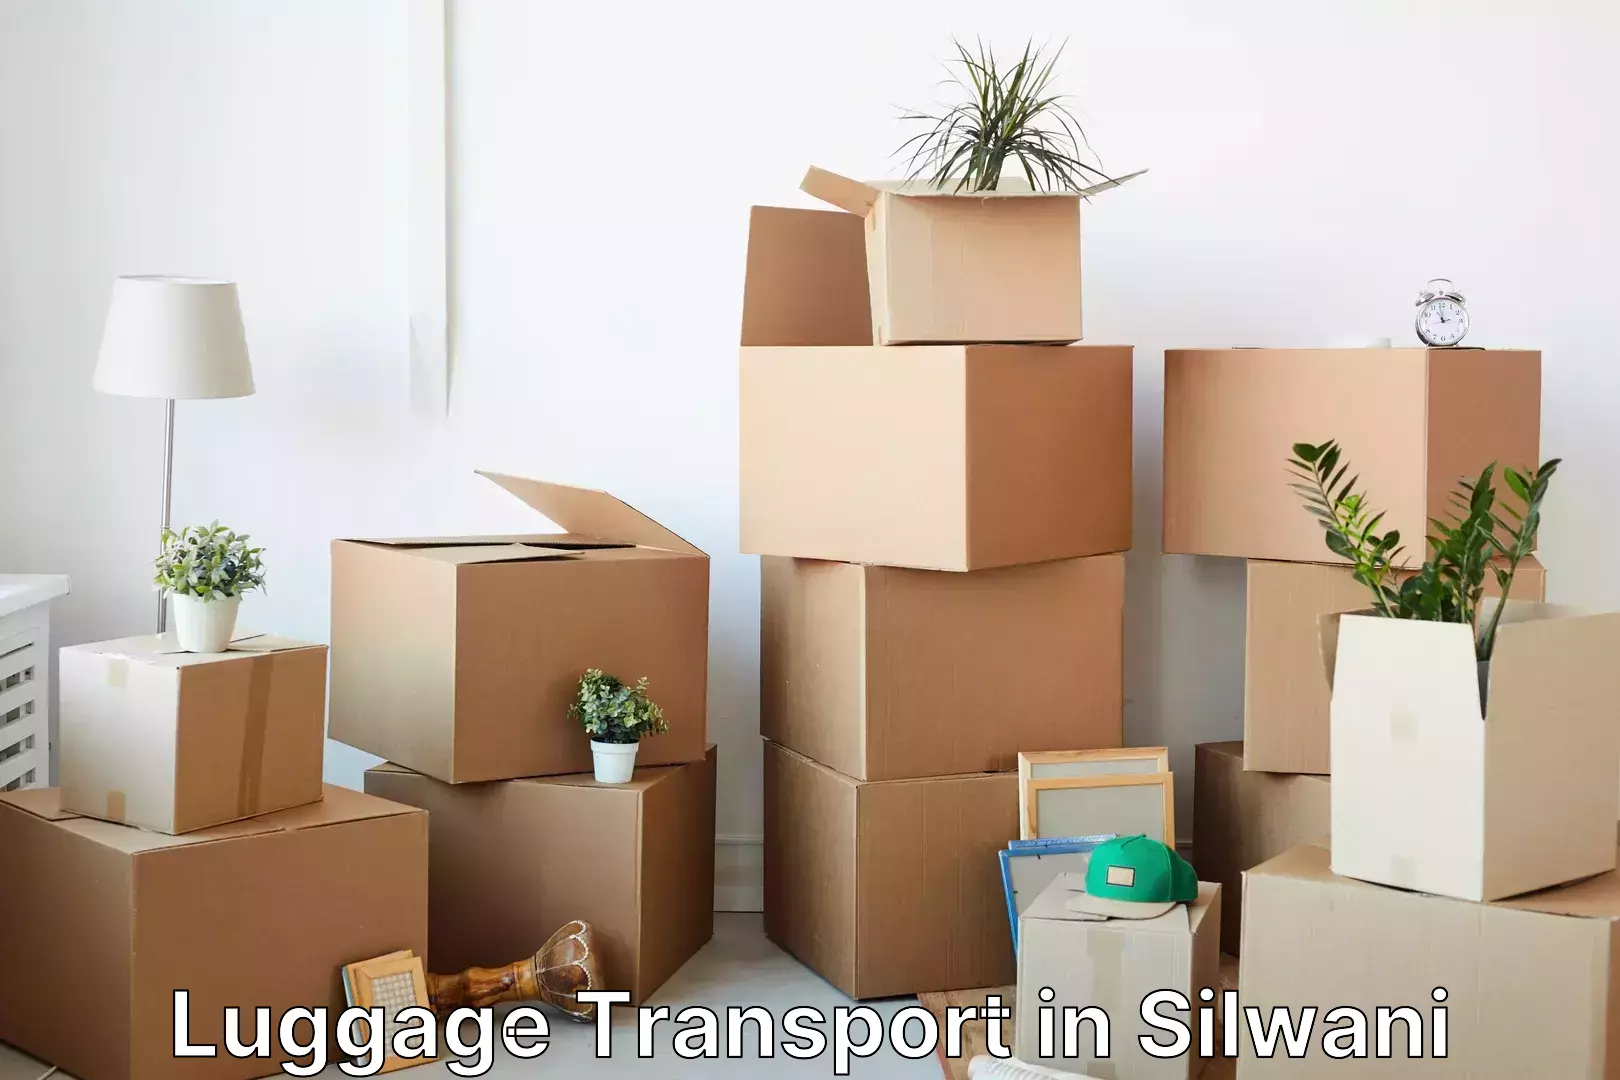 Luggage transport rates calculator in Silwani